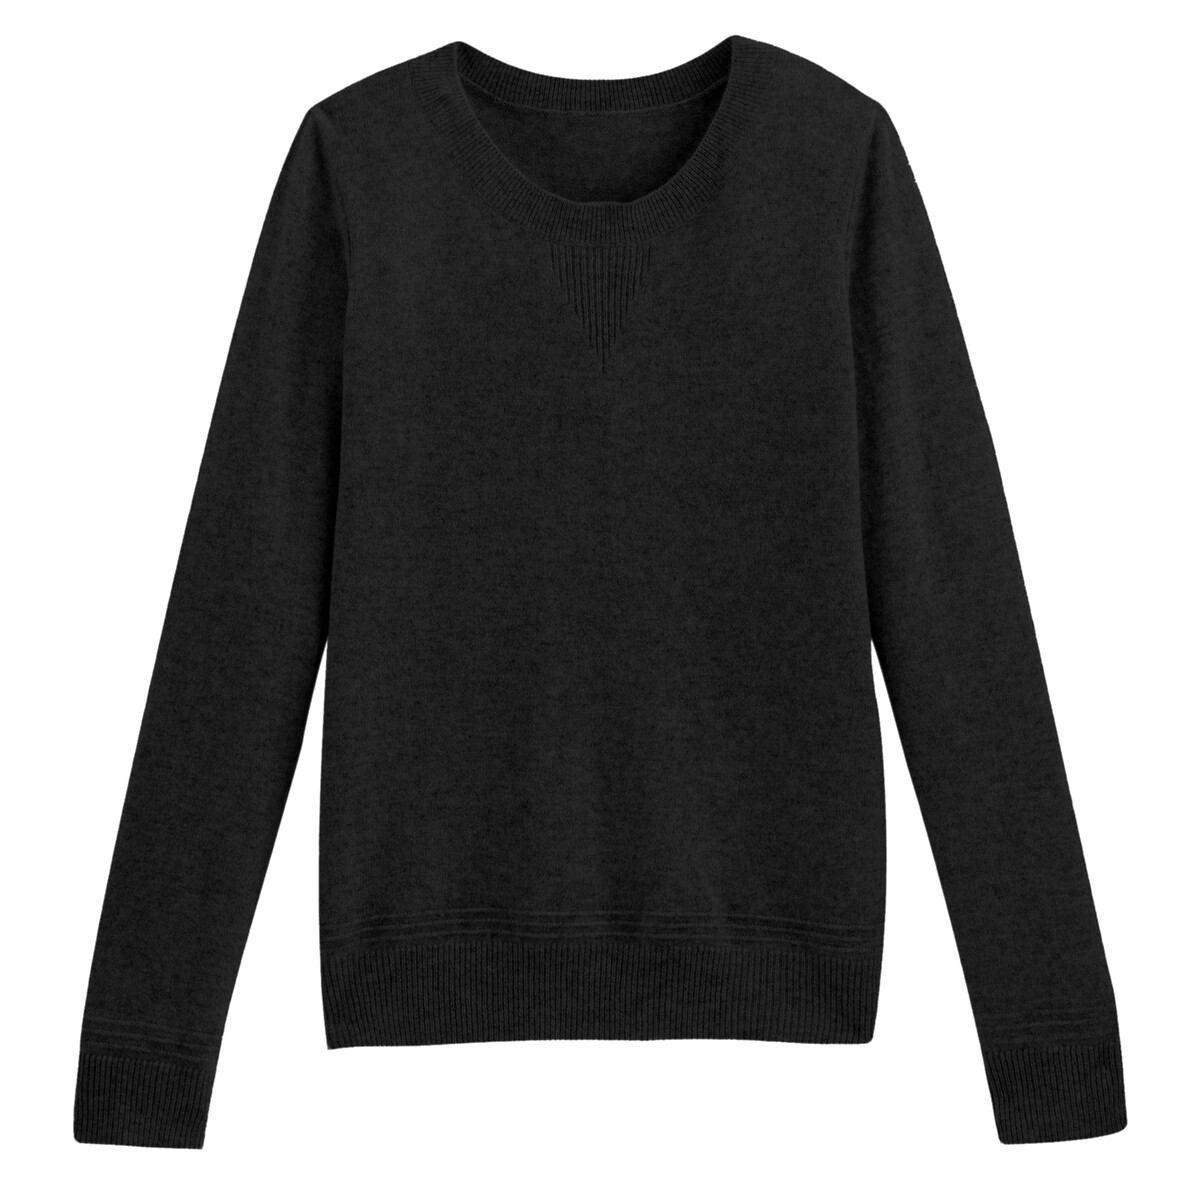 Пуловер La Redoute С круглым вырезом из кашемира S черный, размер S - фото 5